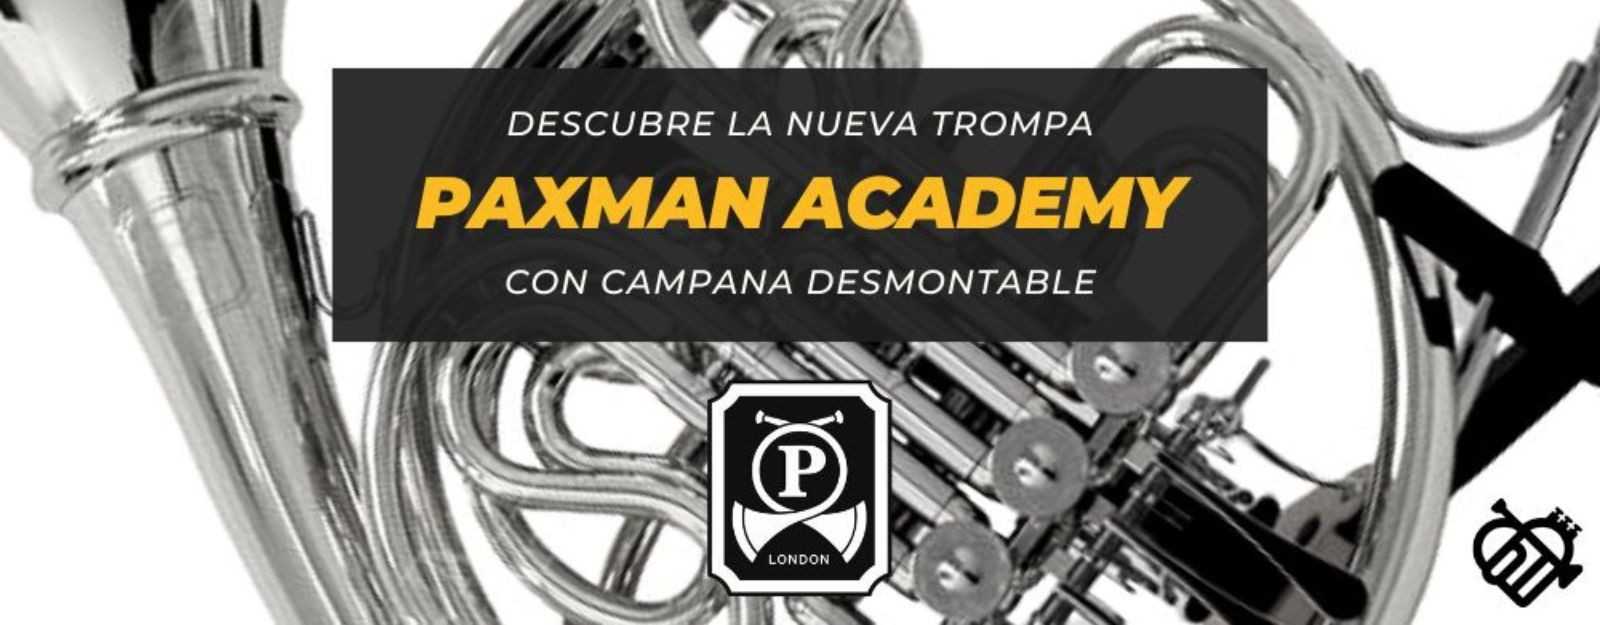 Descubre en exclusiva la nueva trompa Paxman Academy con campana desmontable